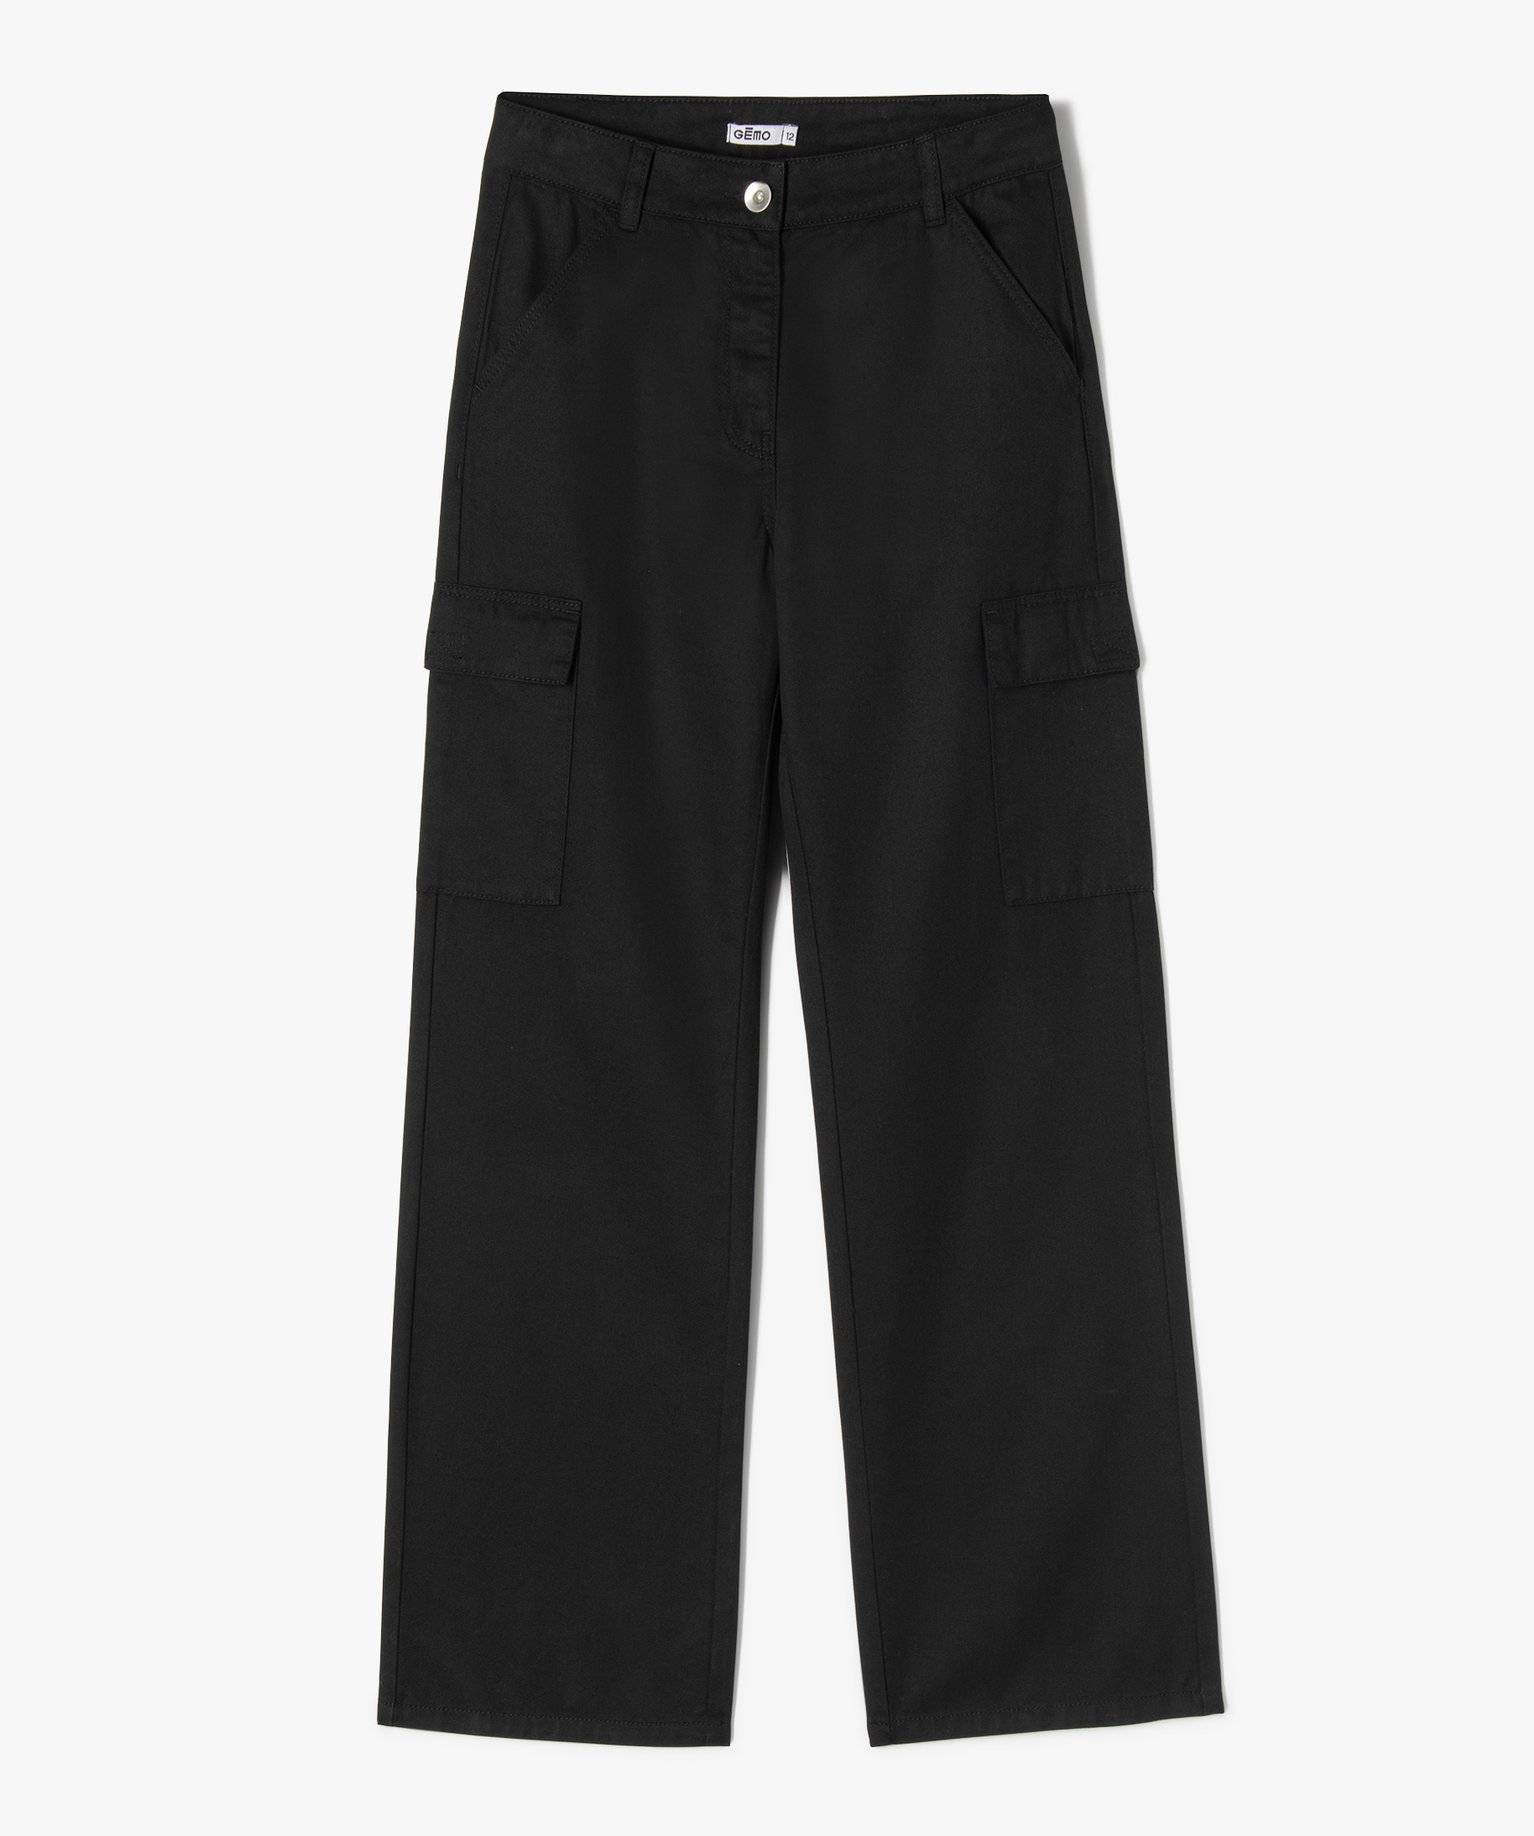 Pantalon cargo straight - noir